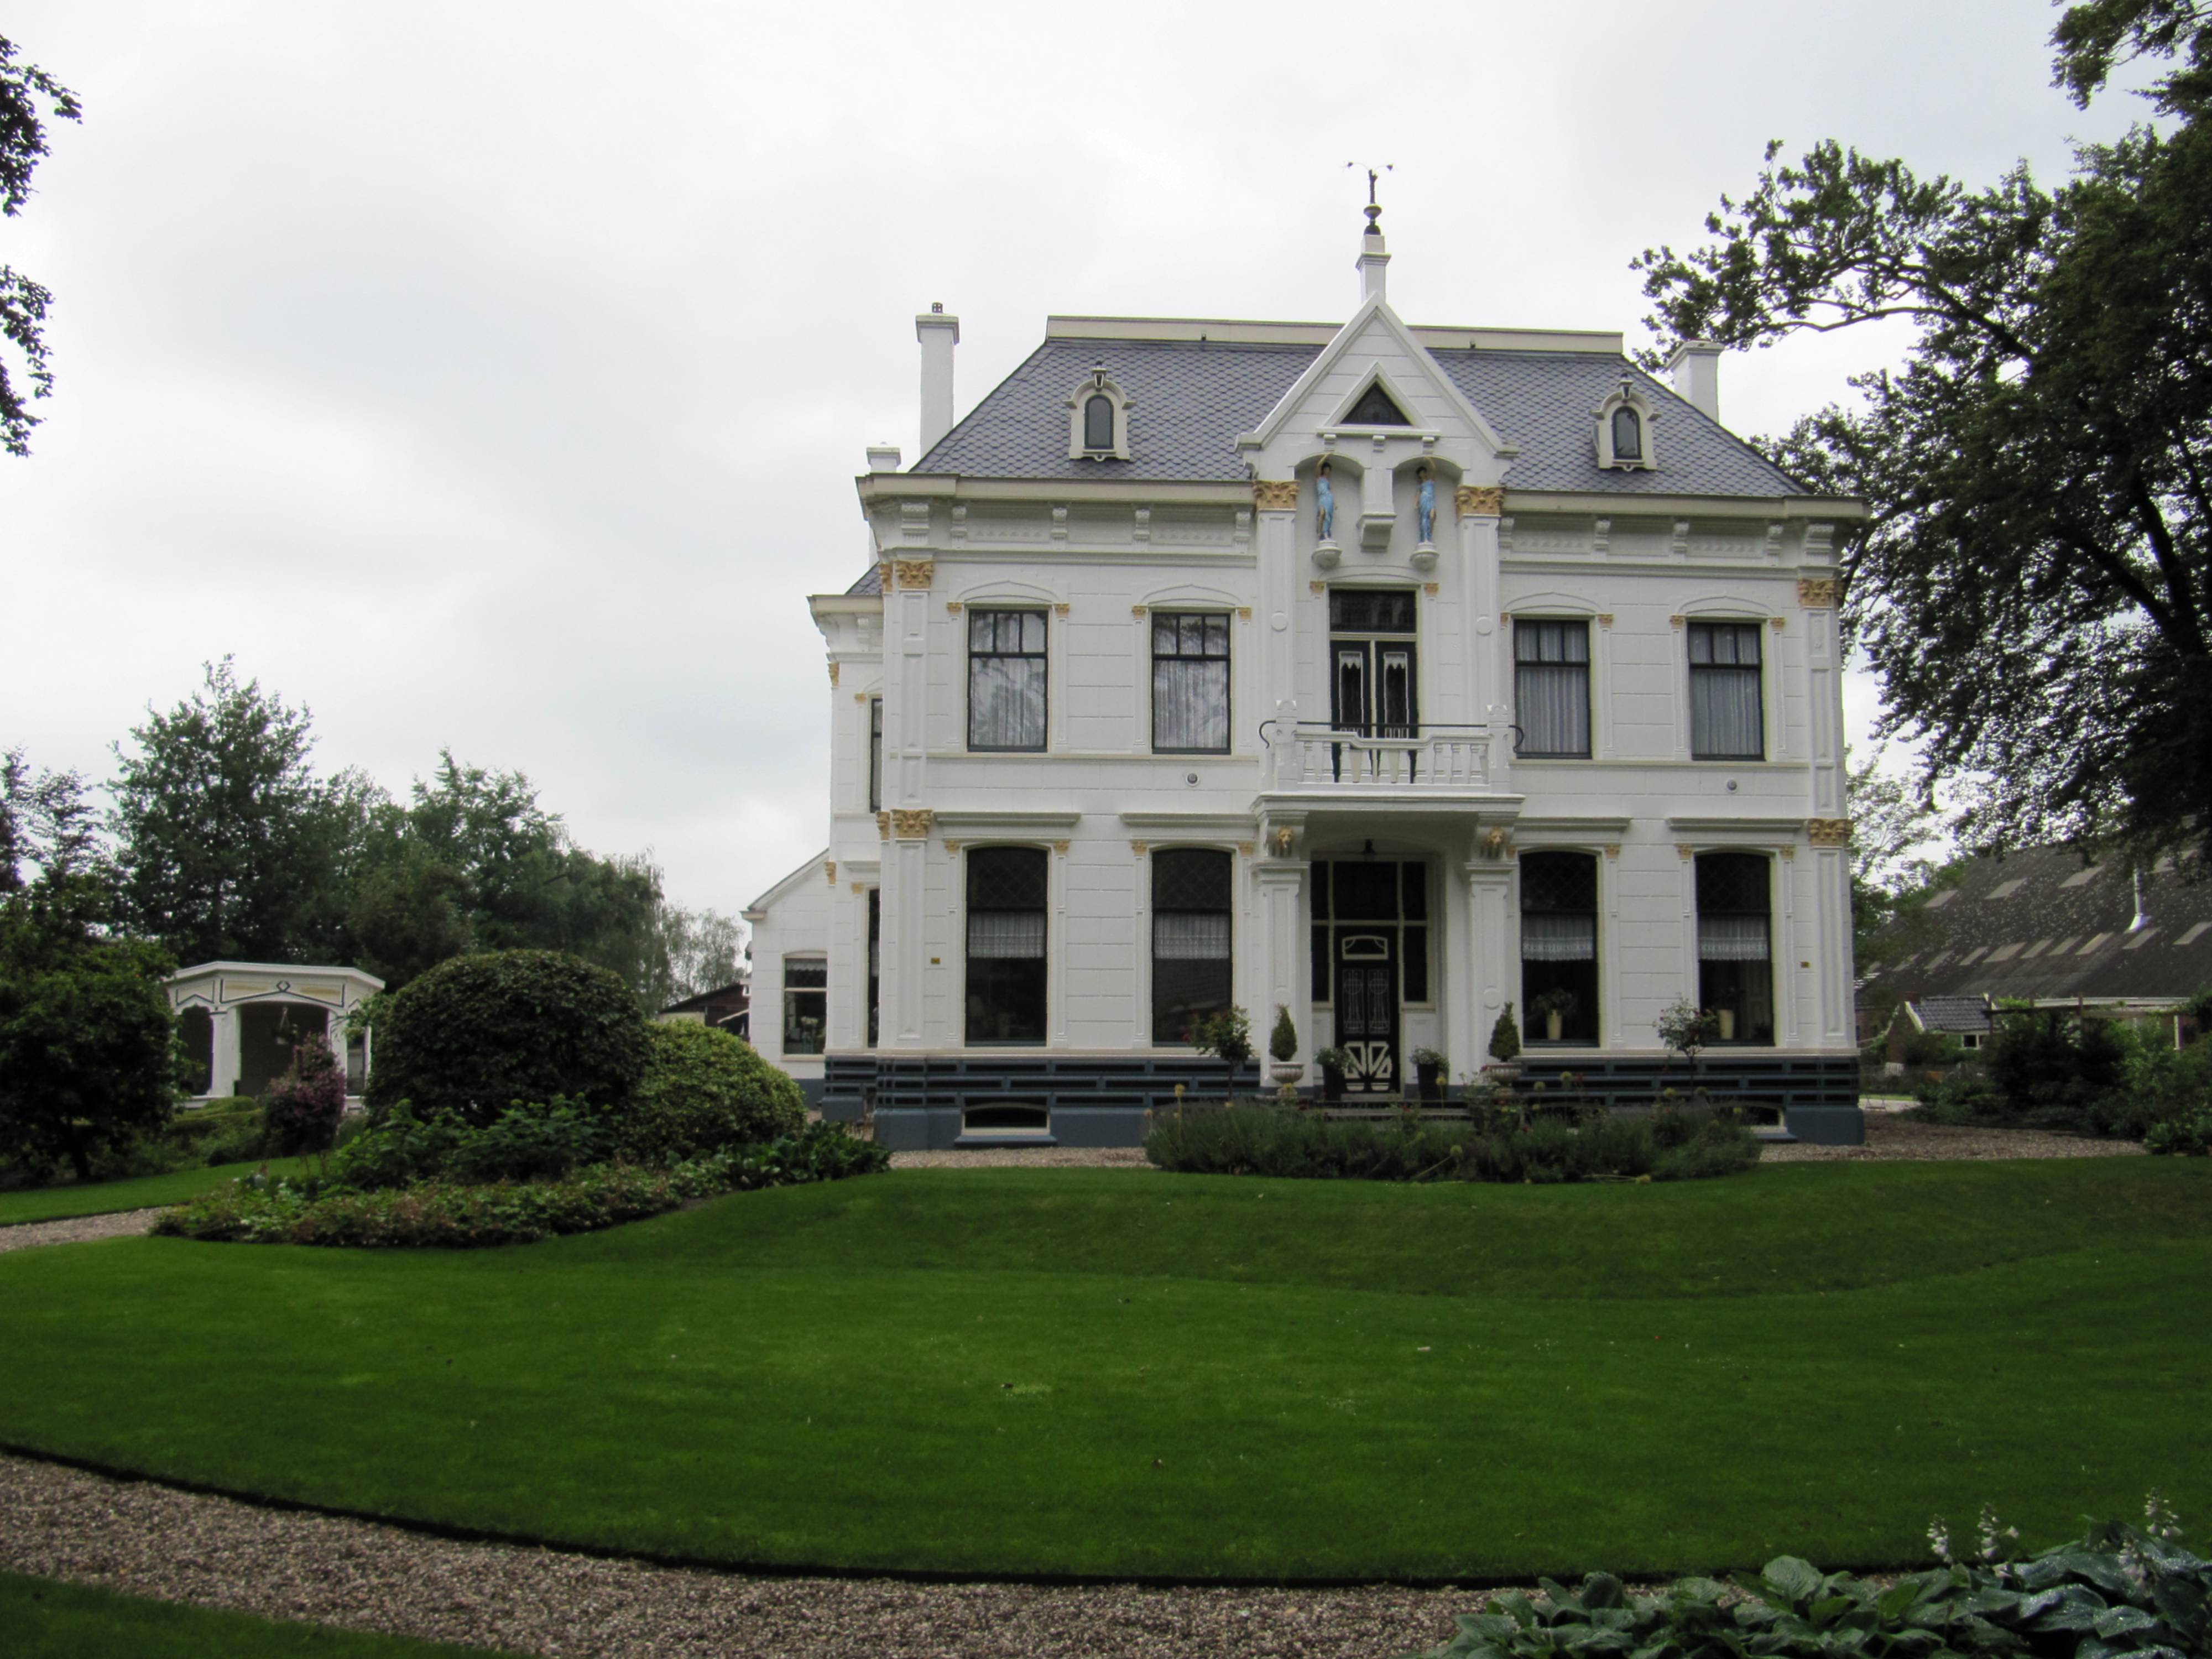 Villaboerderij; in eclectische stijl met neoclassicistische en art-nouveau-elementen (1906). Hoofdweg 245. 